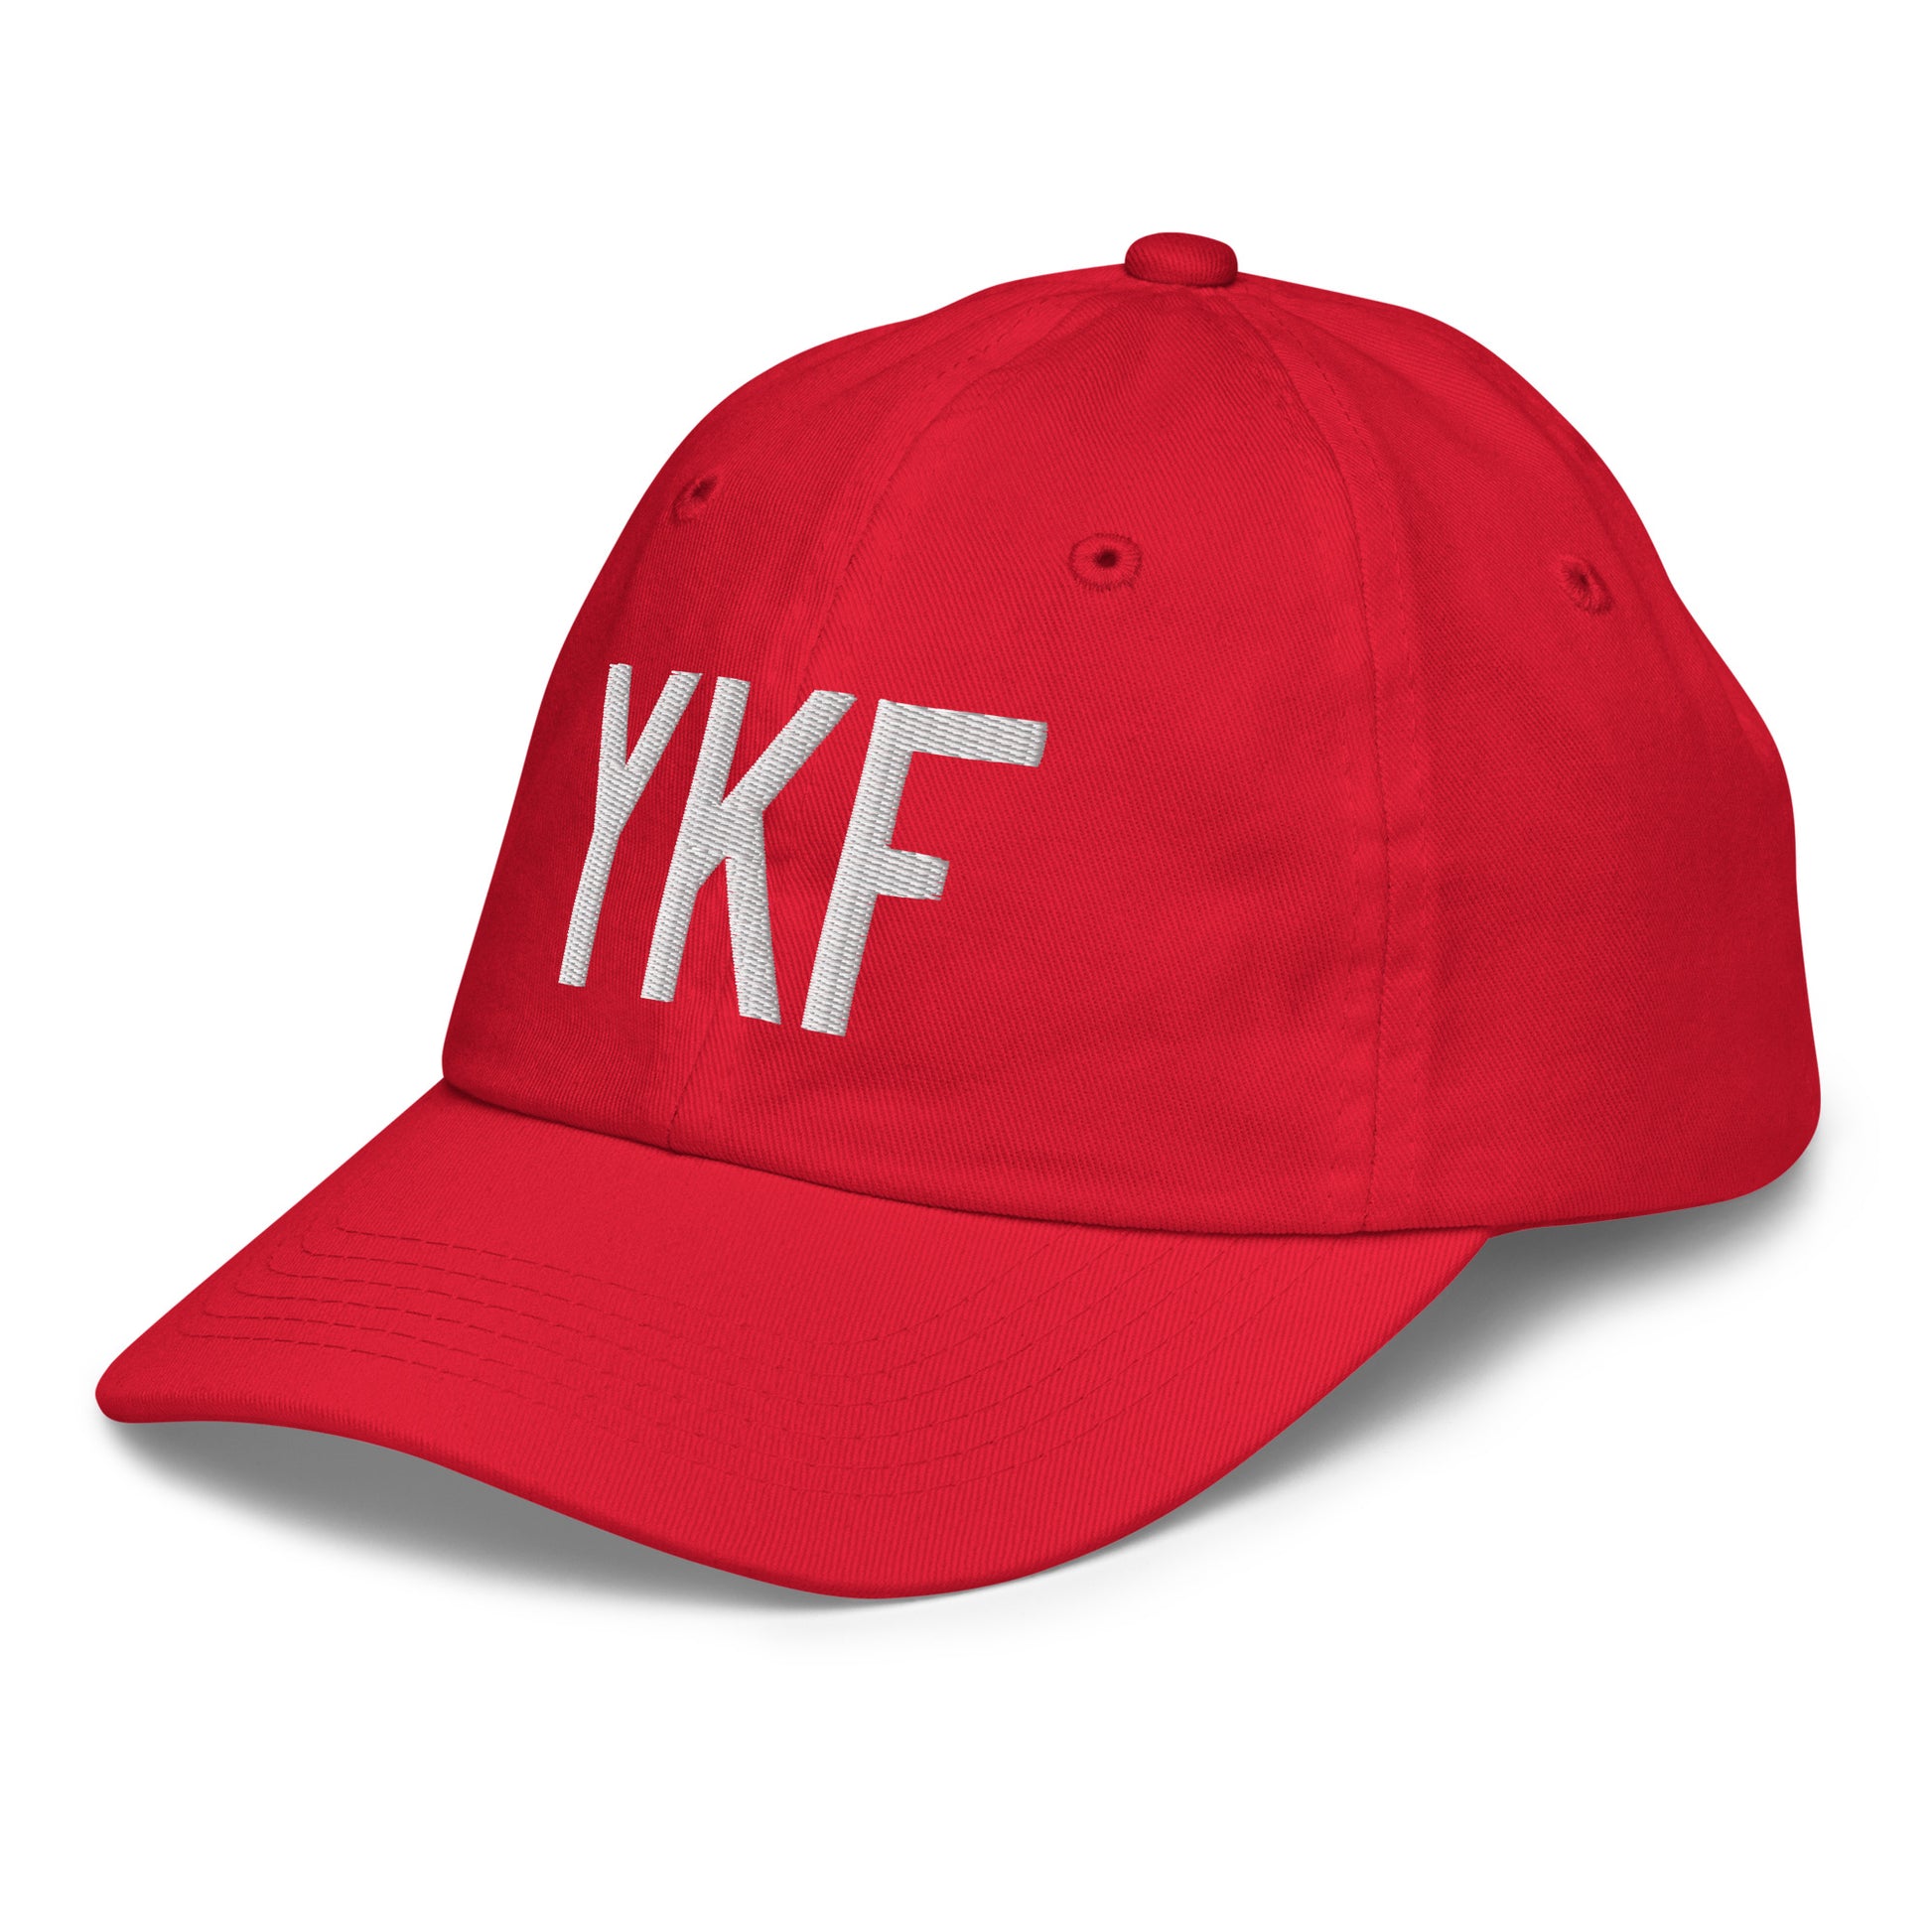 Airport Code Kid's Baseball Cap - White • YKF Waterloo • YHM Designs - Image 19